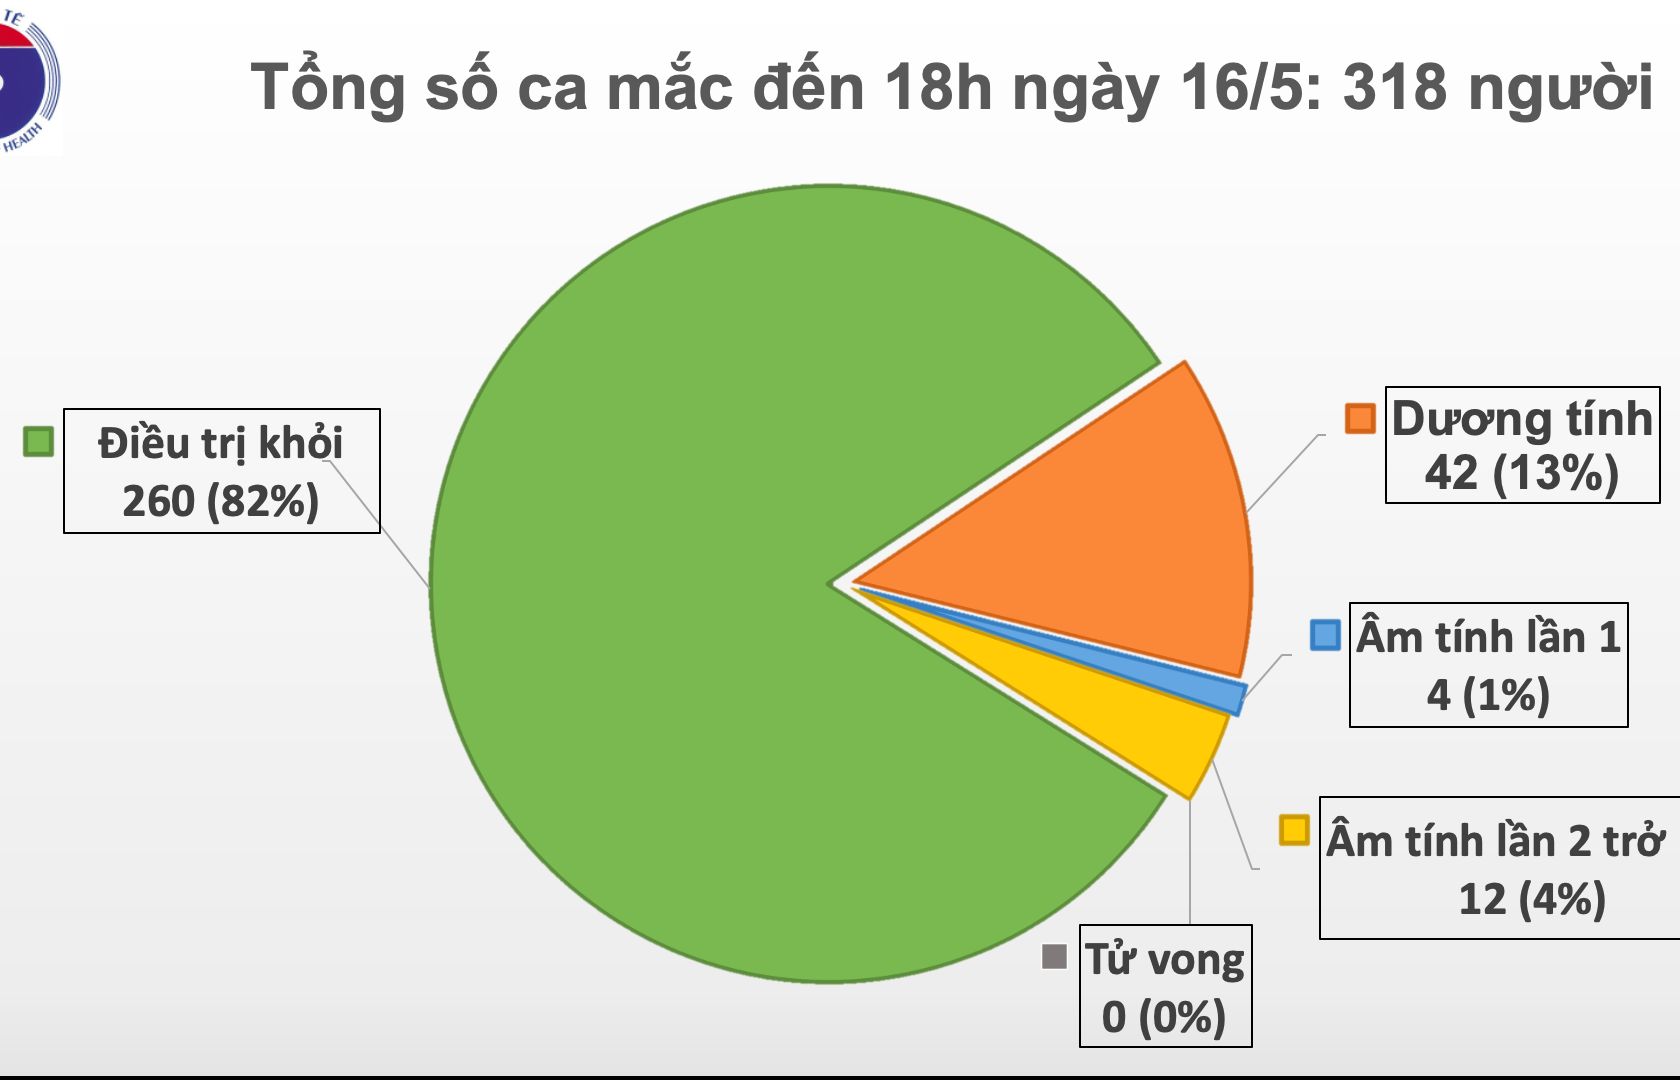 Chiều 16/5, Việt Nam ghi nhận thêm 4 trường hợp mắc Covid-19 mới, tổng số ca nhiễm lên 318 ca